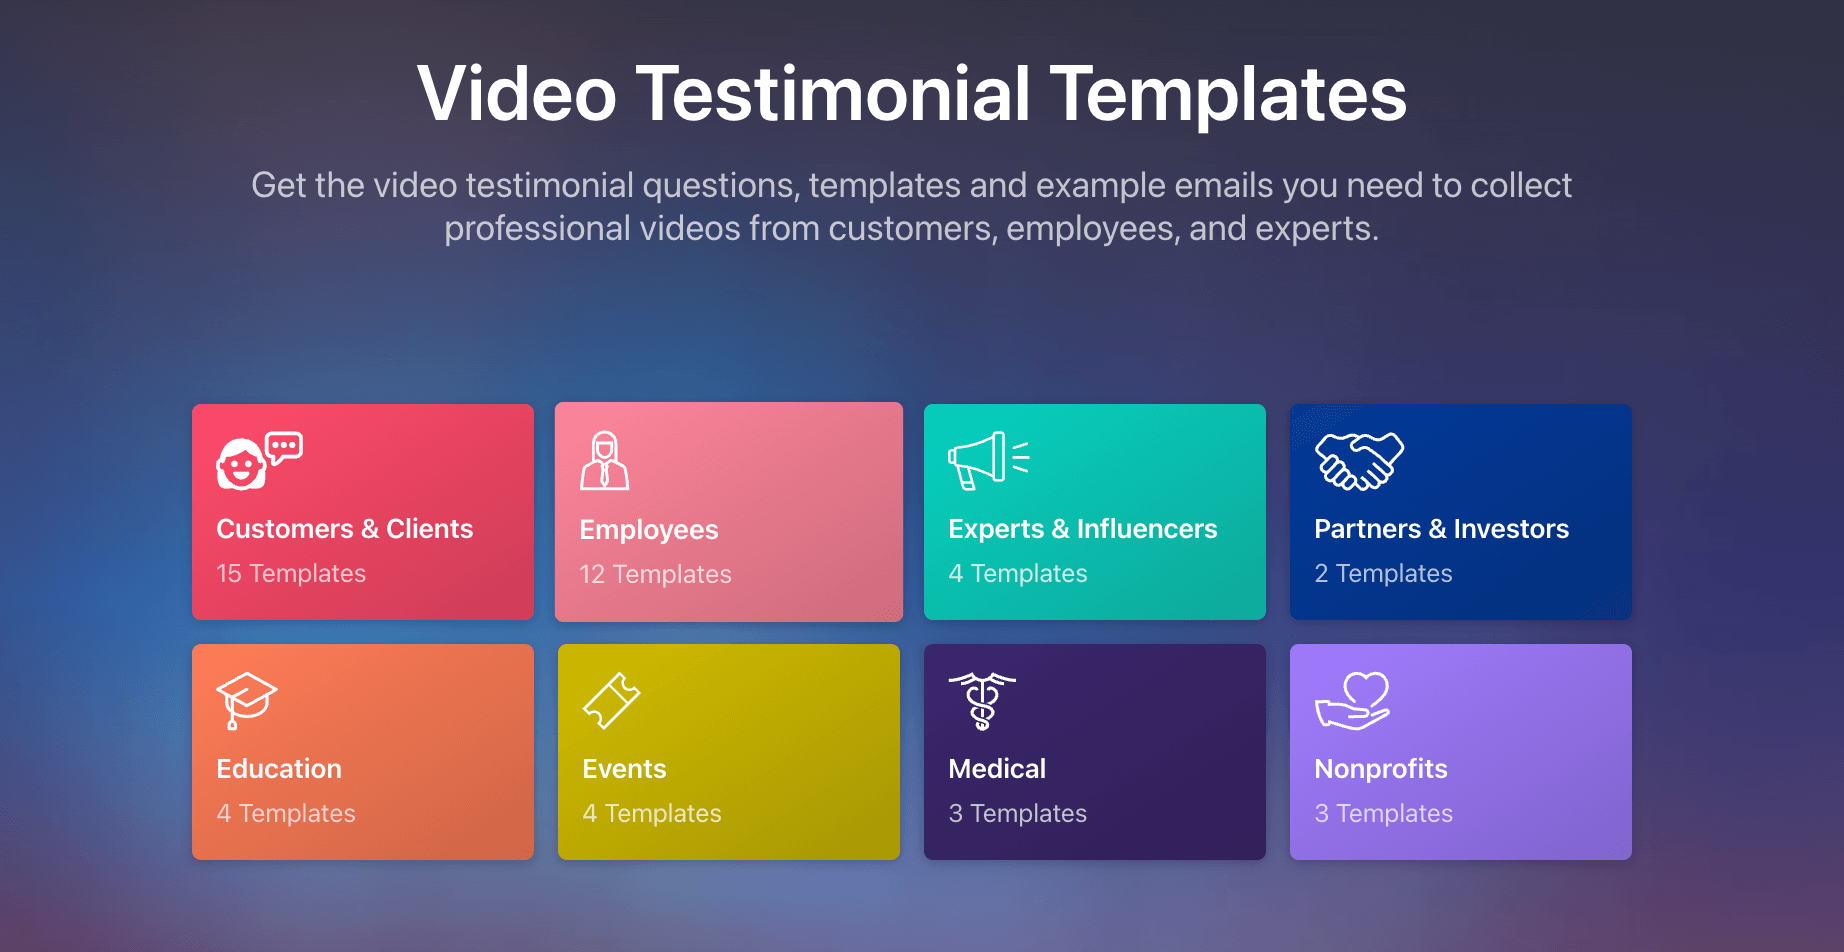 Video testimonial templates